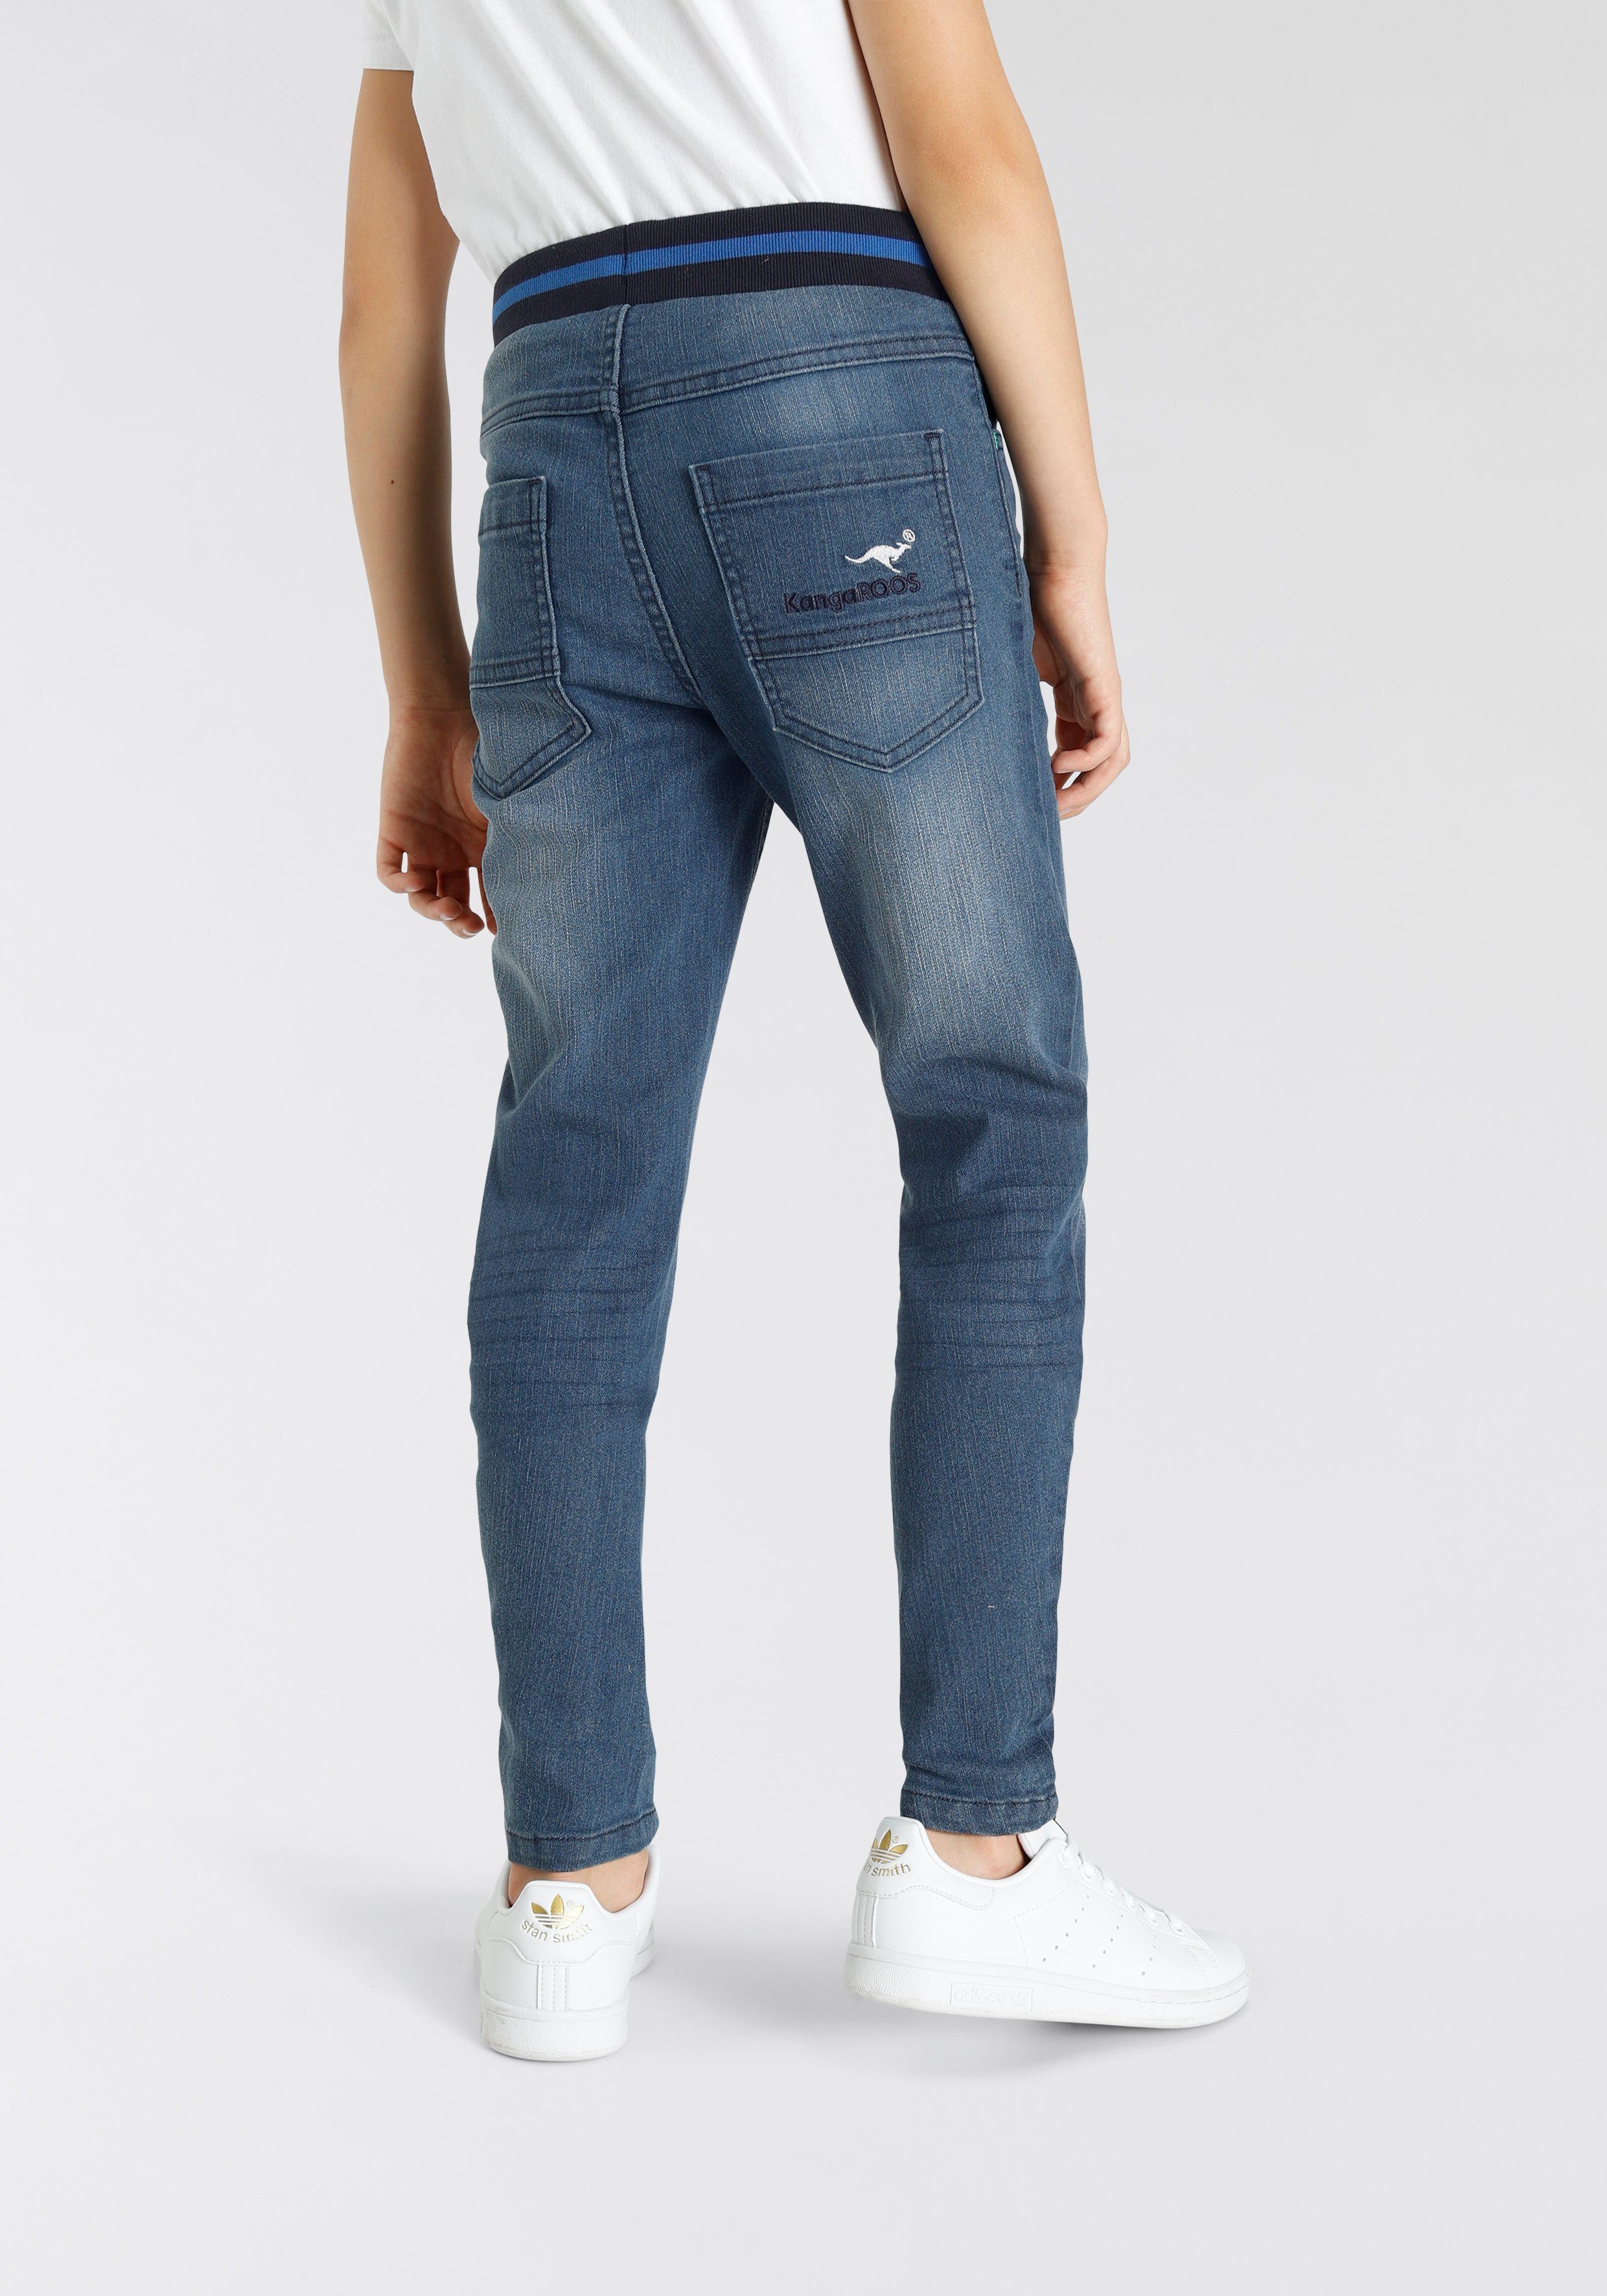 KangaROOS Stretch-Jeans Denim in authentischer Waschung